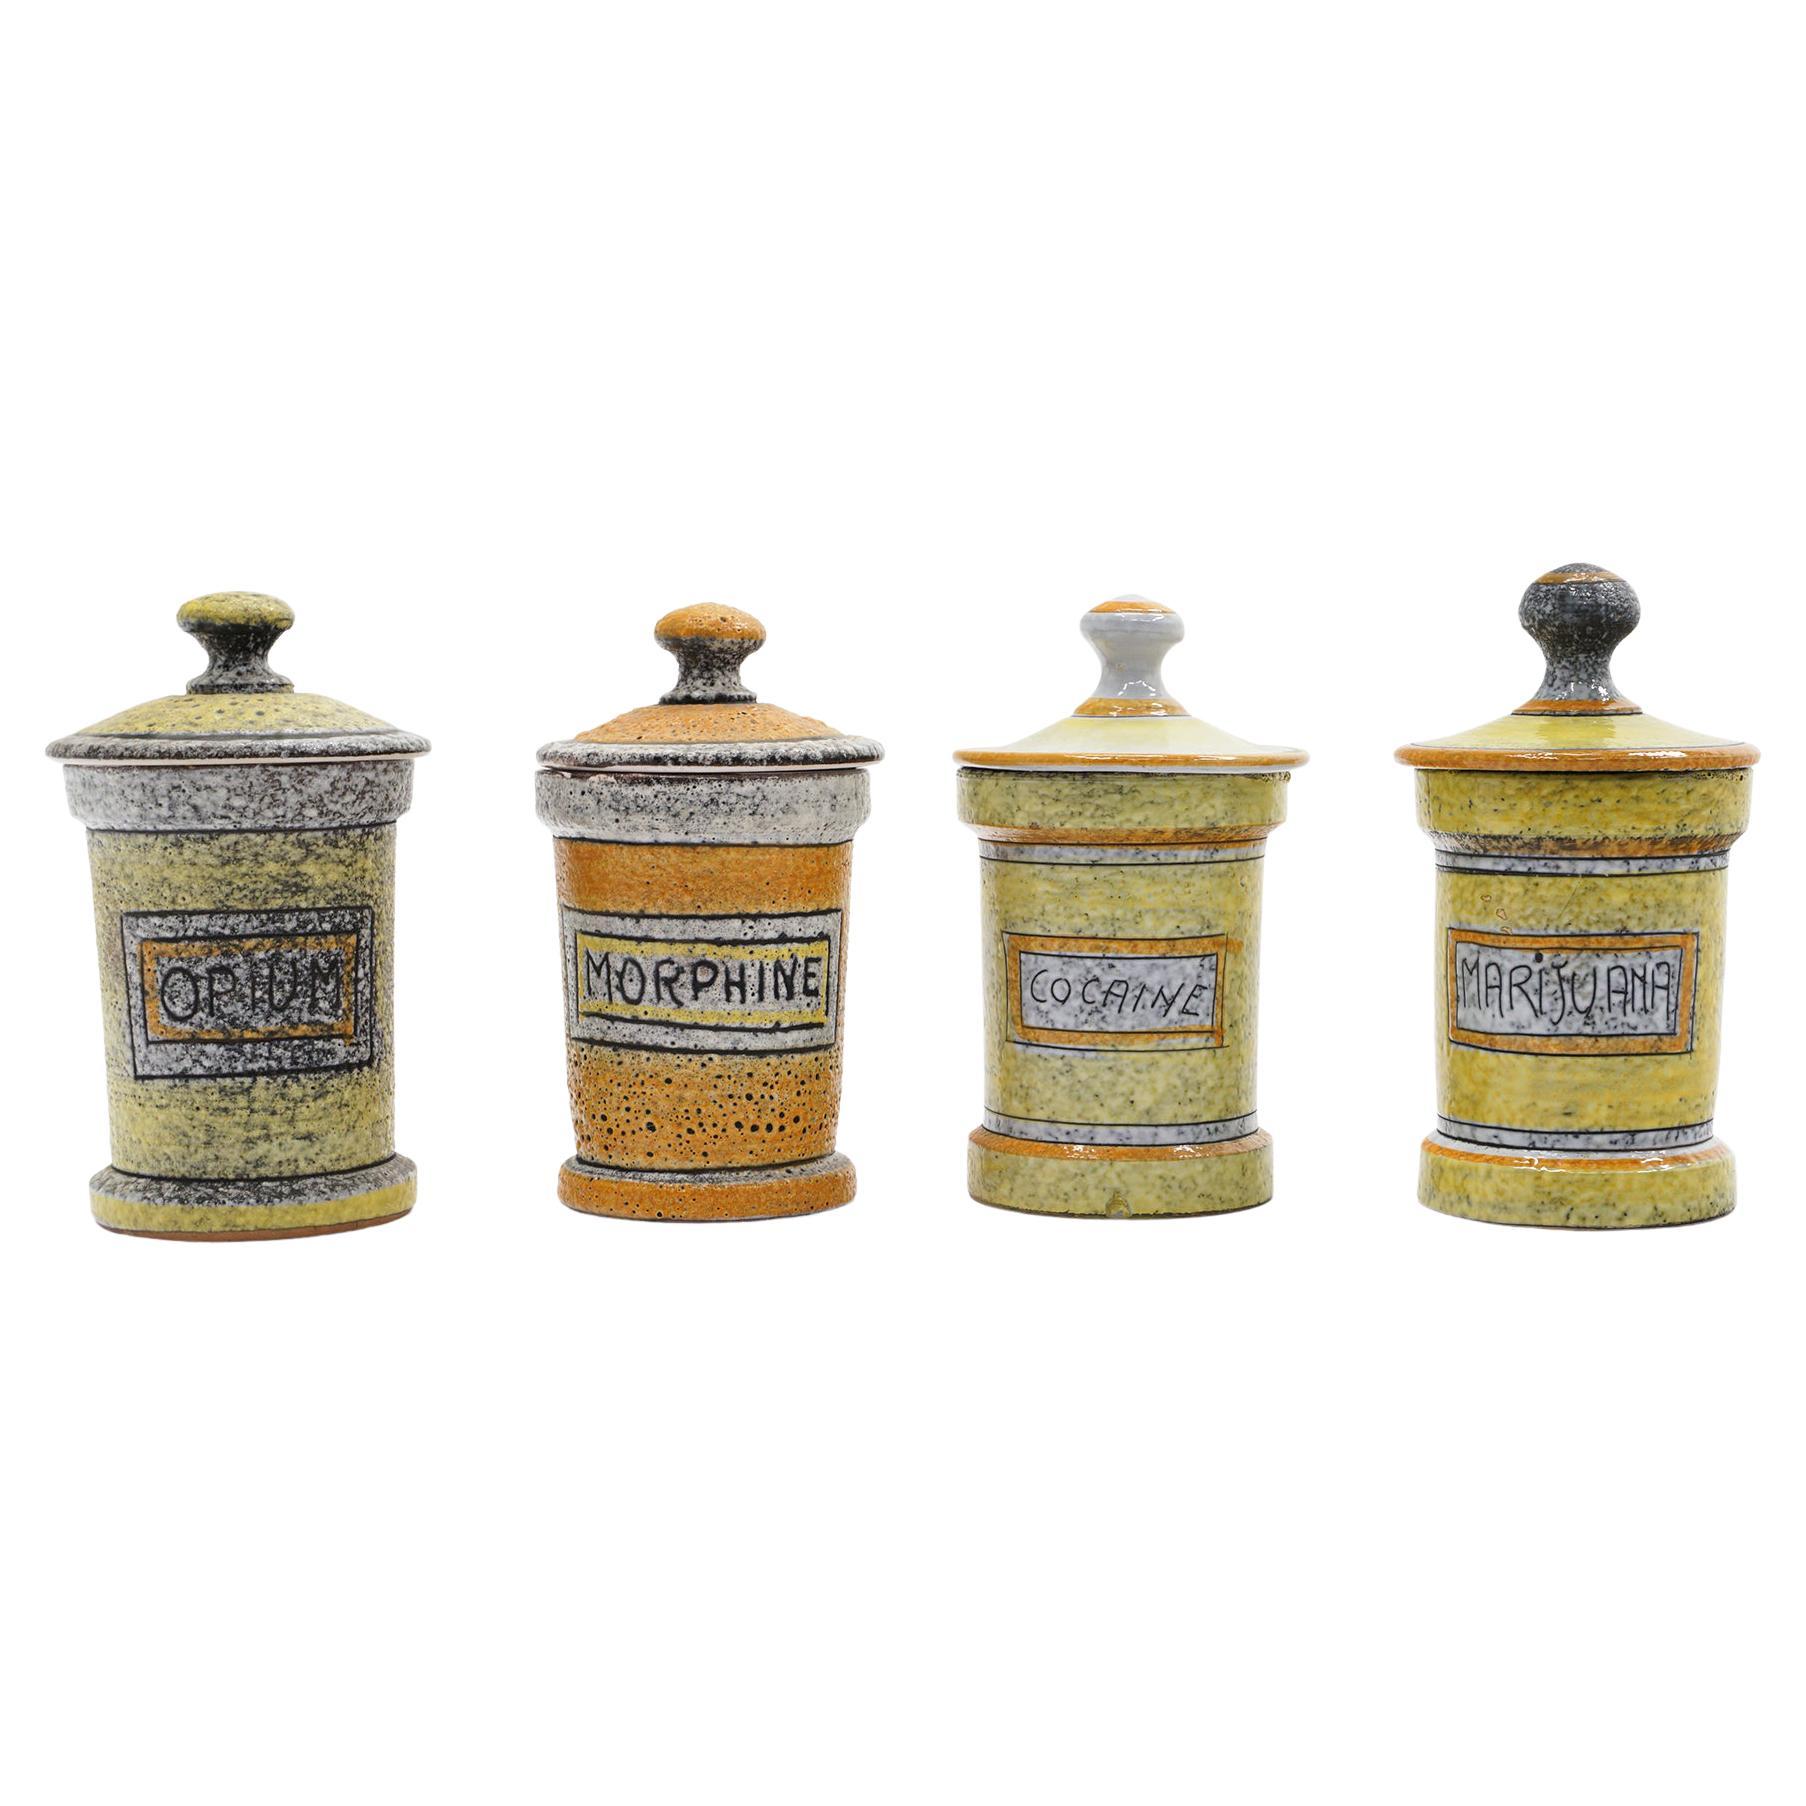 Vice Jars / Drogendosen aus Keramik, importiert von Raymor, Italien, 1950er Jahre, selten